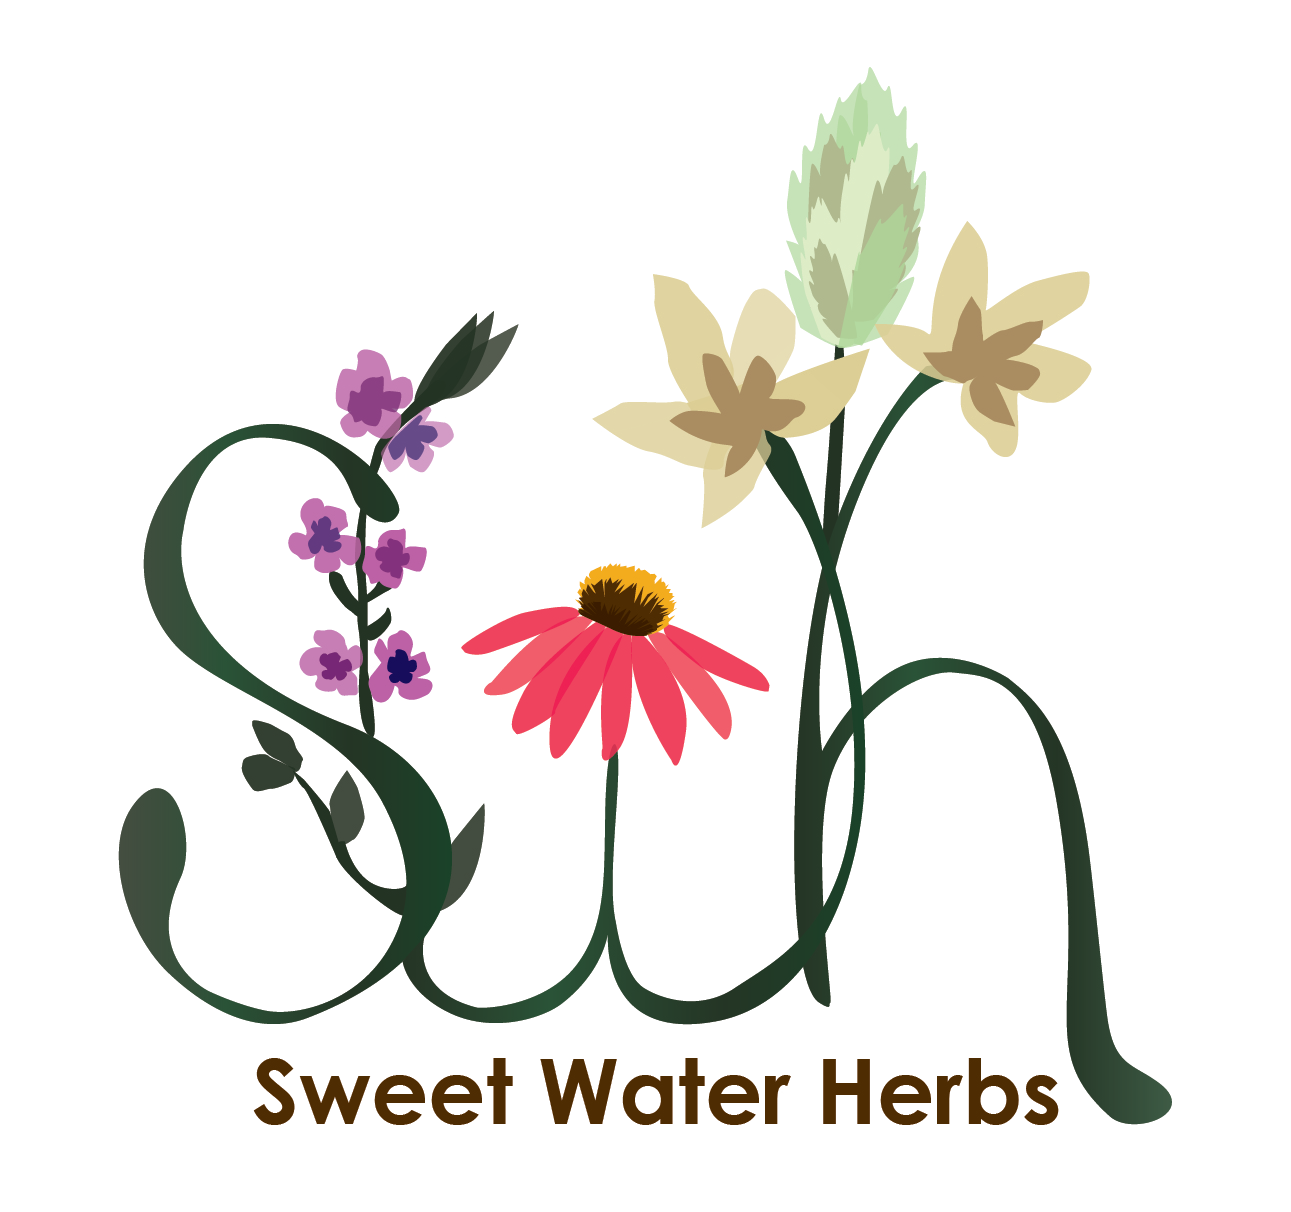 Sweet Water Herbs